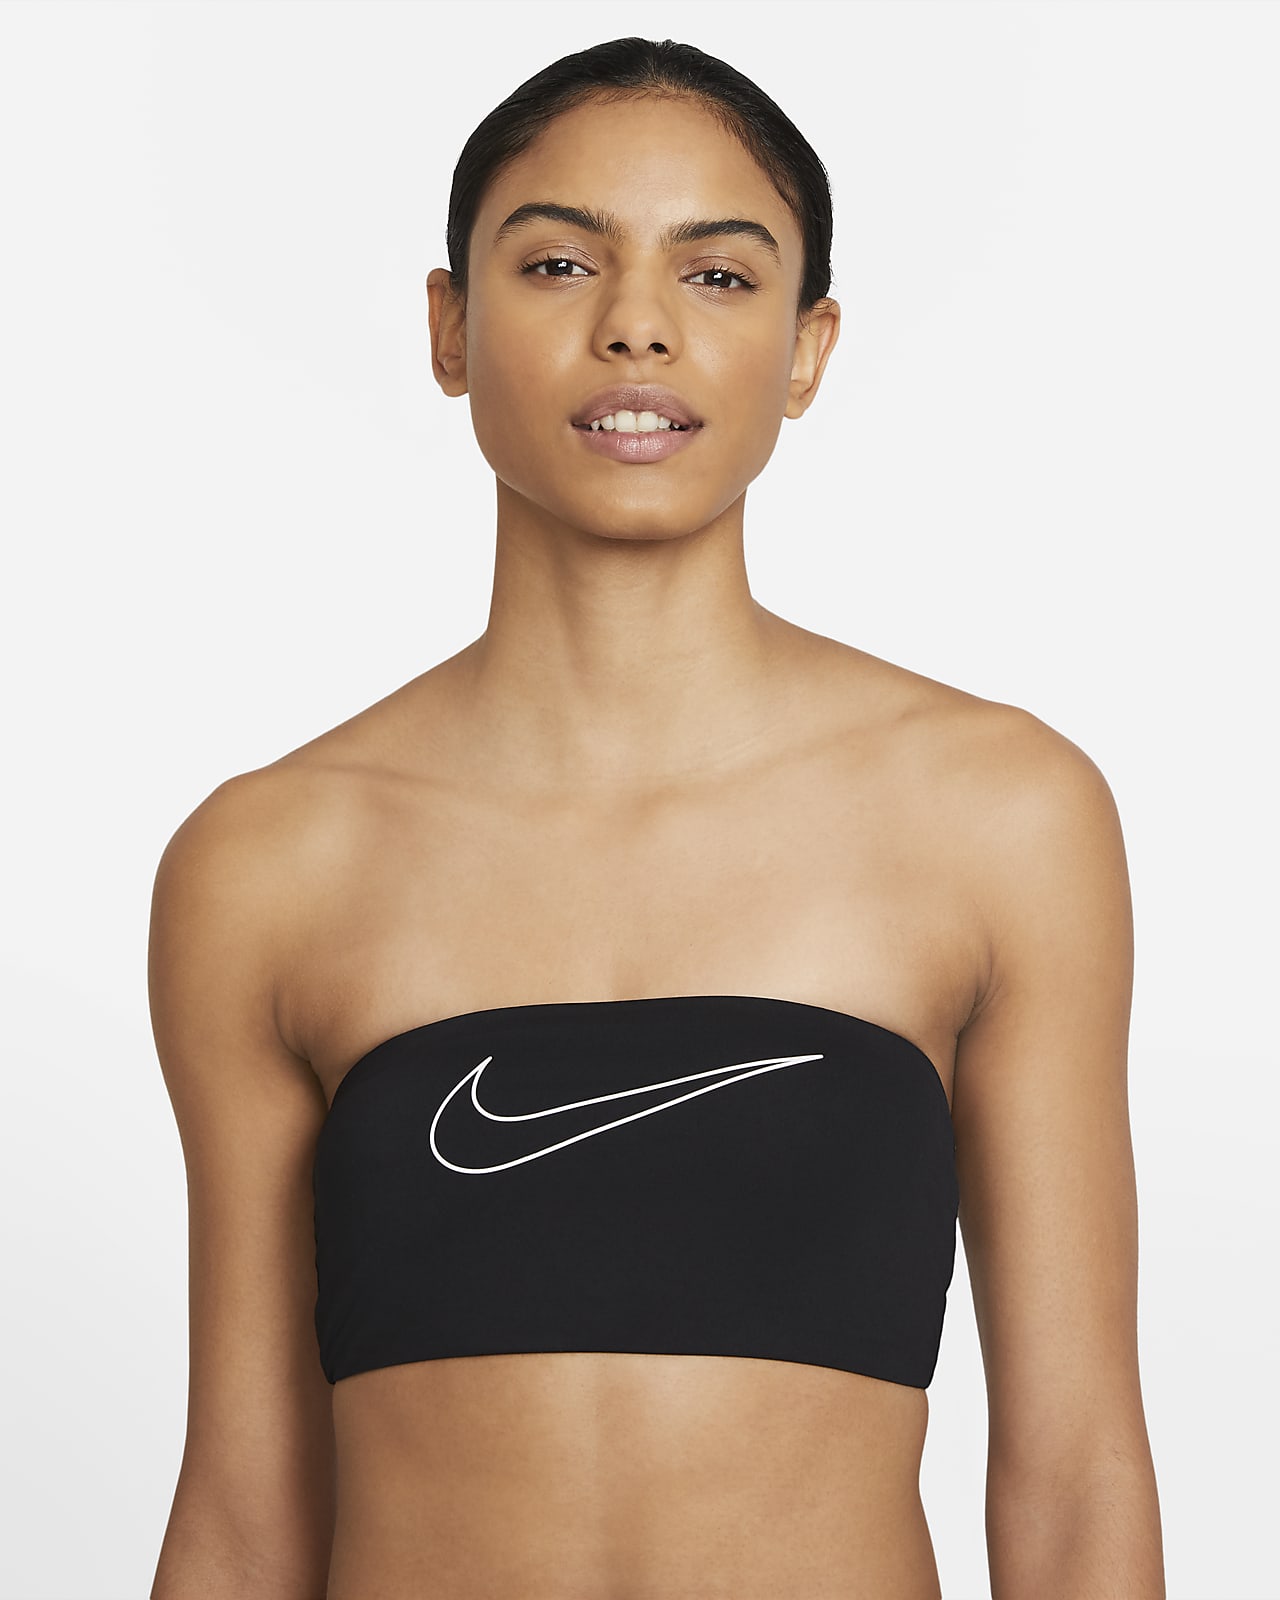 I agree to I agree Compliment Nike Women's Bandeau Bikini Top. Nike LU